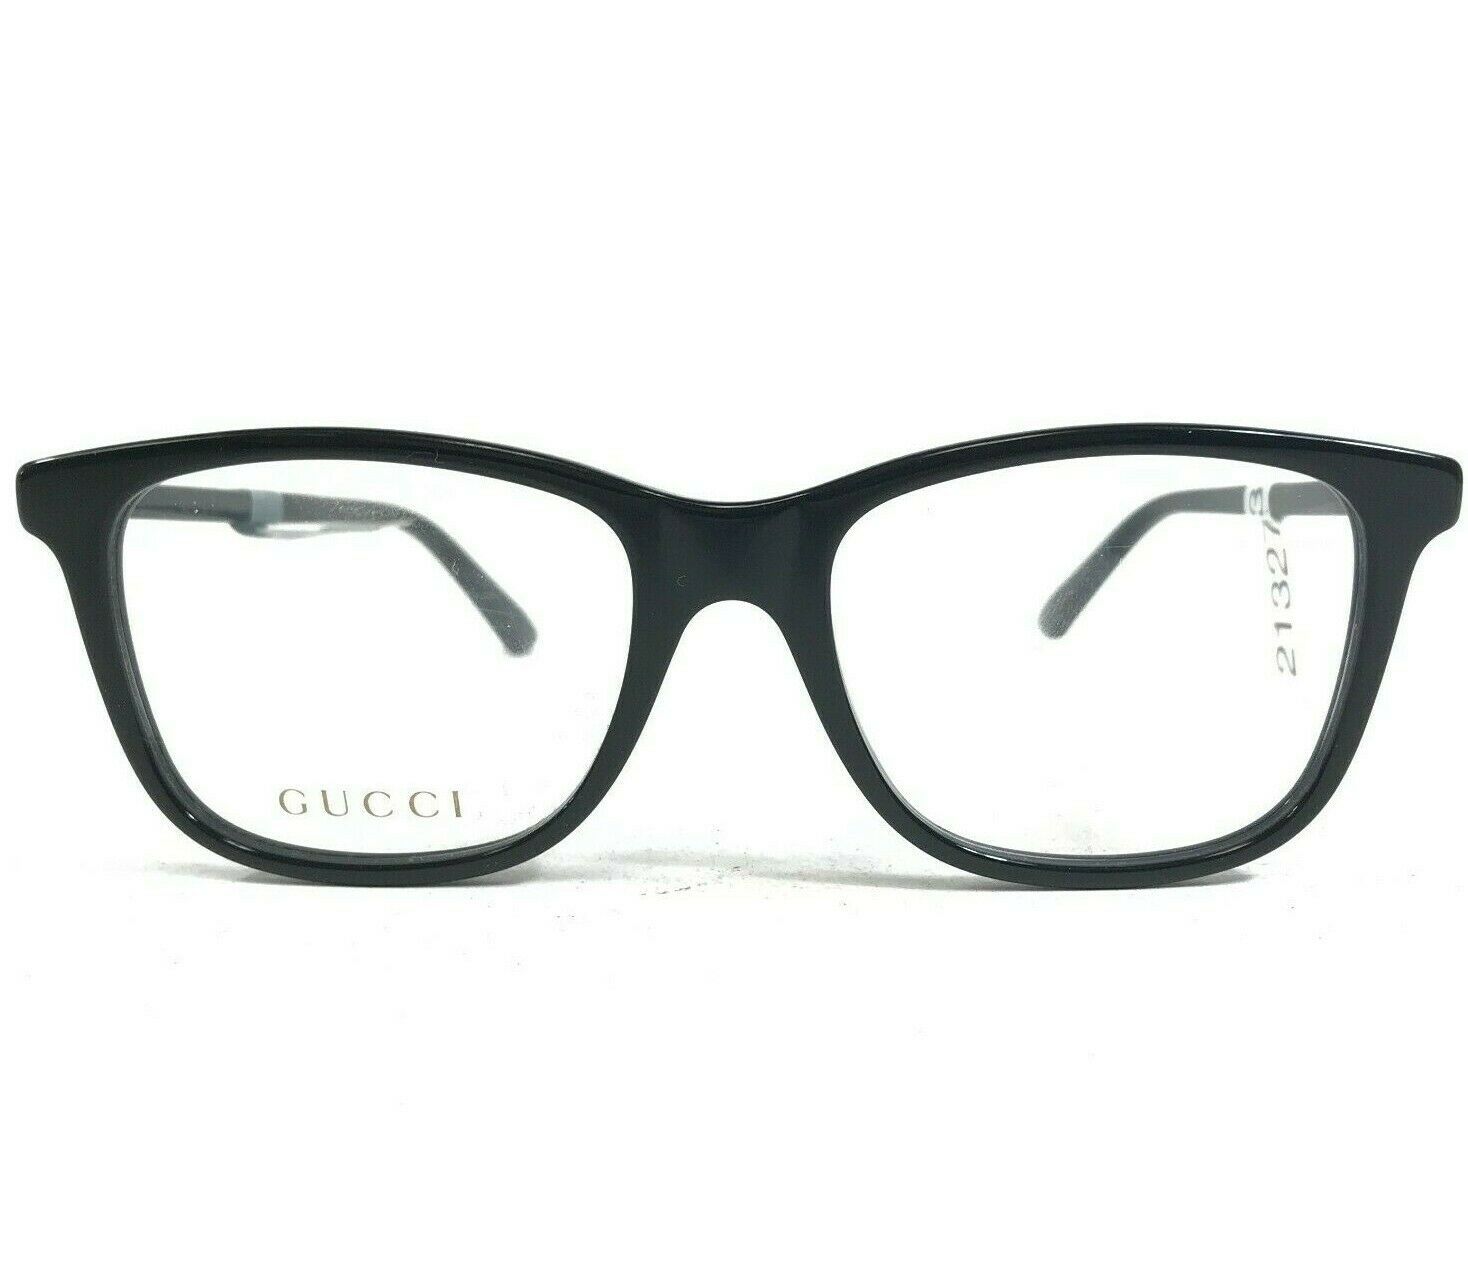 Gucci GG0018O 001 Eyeglasses Frames Black Square Thick Rim Side Logos ...